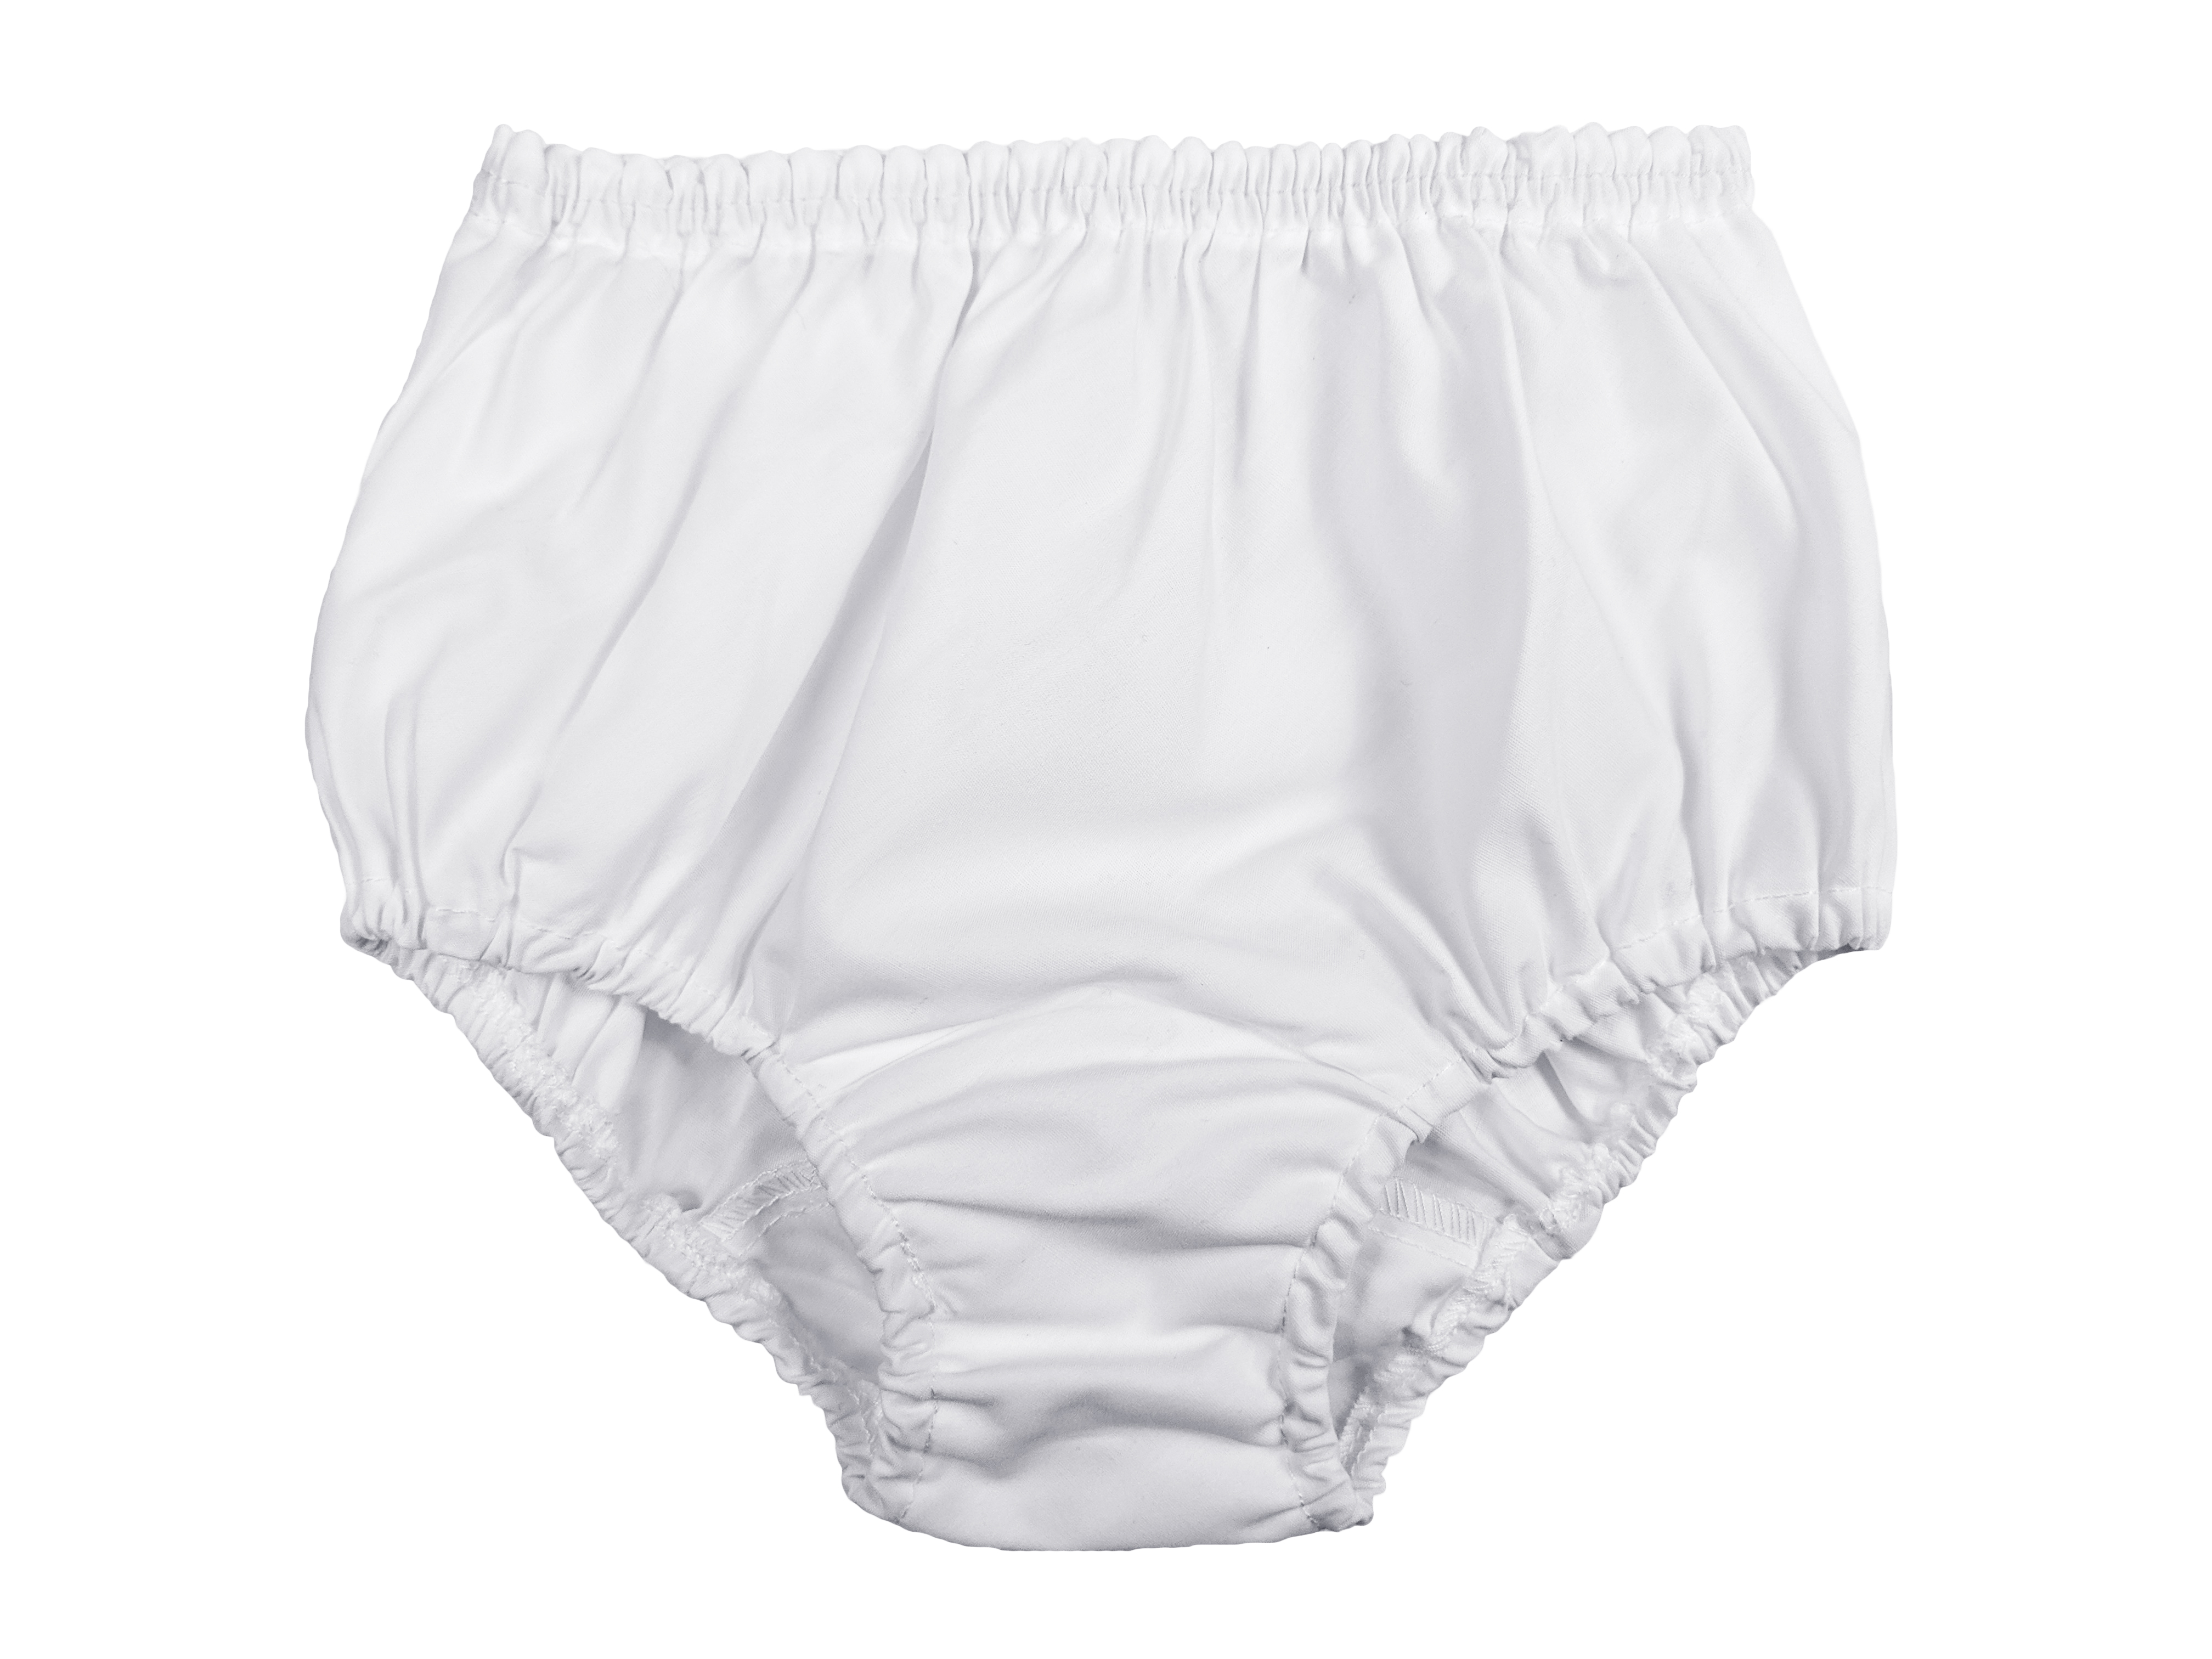 Baby Bottom, Bloomers - Toddler Girls Underwear Shorts 18-24 Months